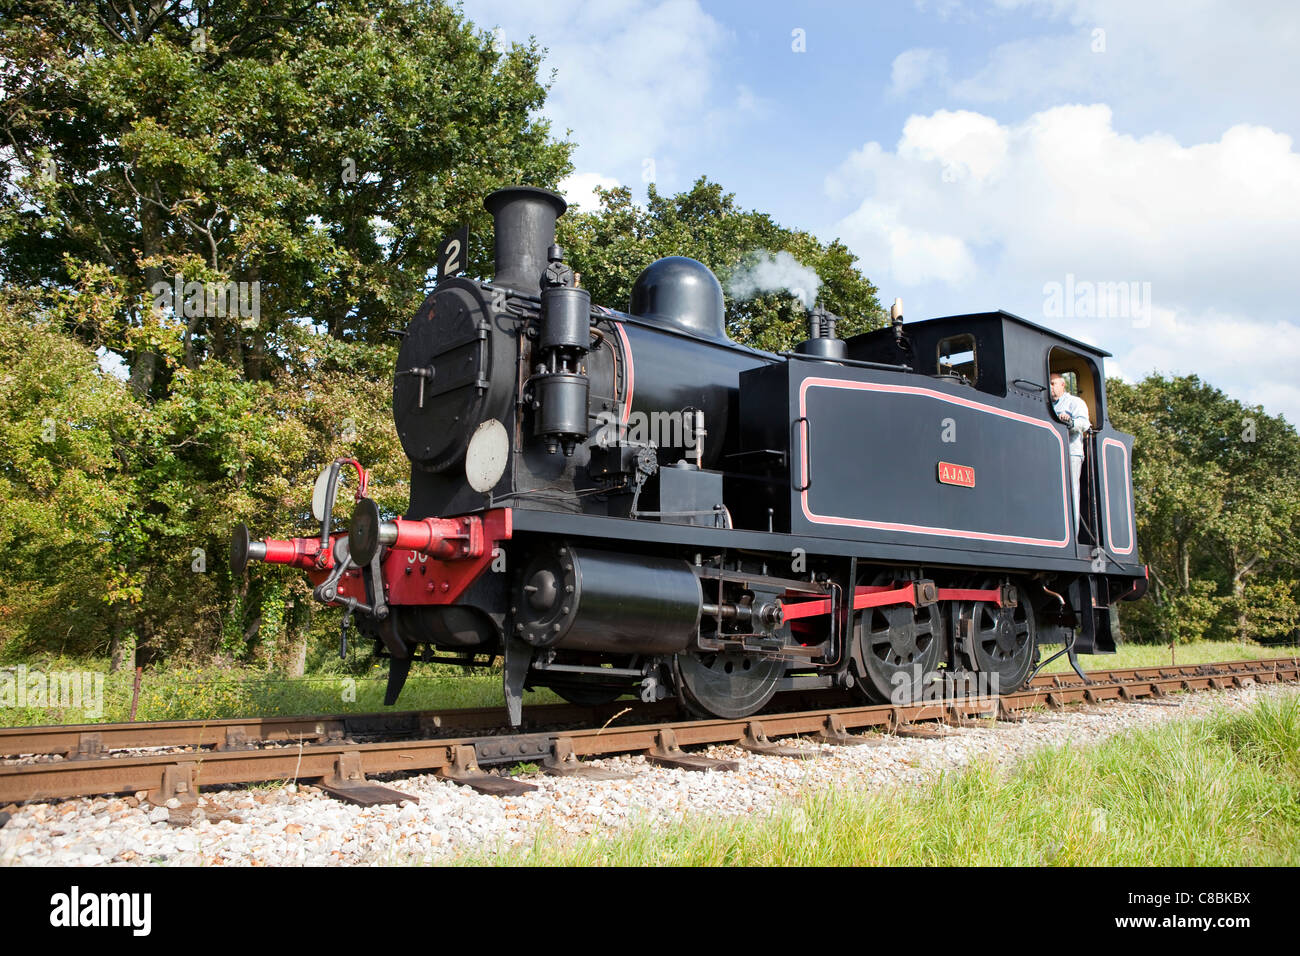 En la Isla de Wight, un tren de vapor, Foto de stock